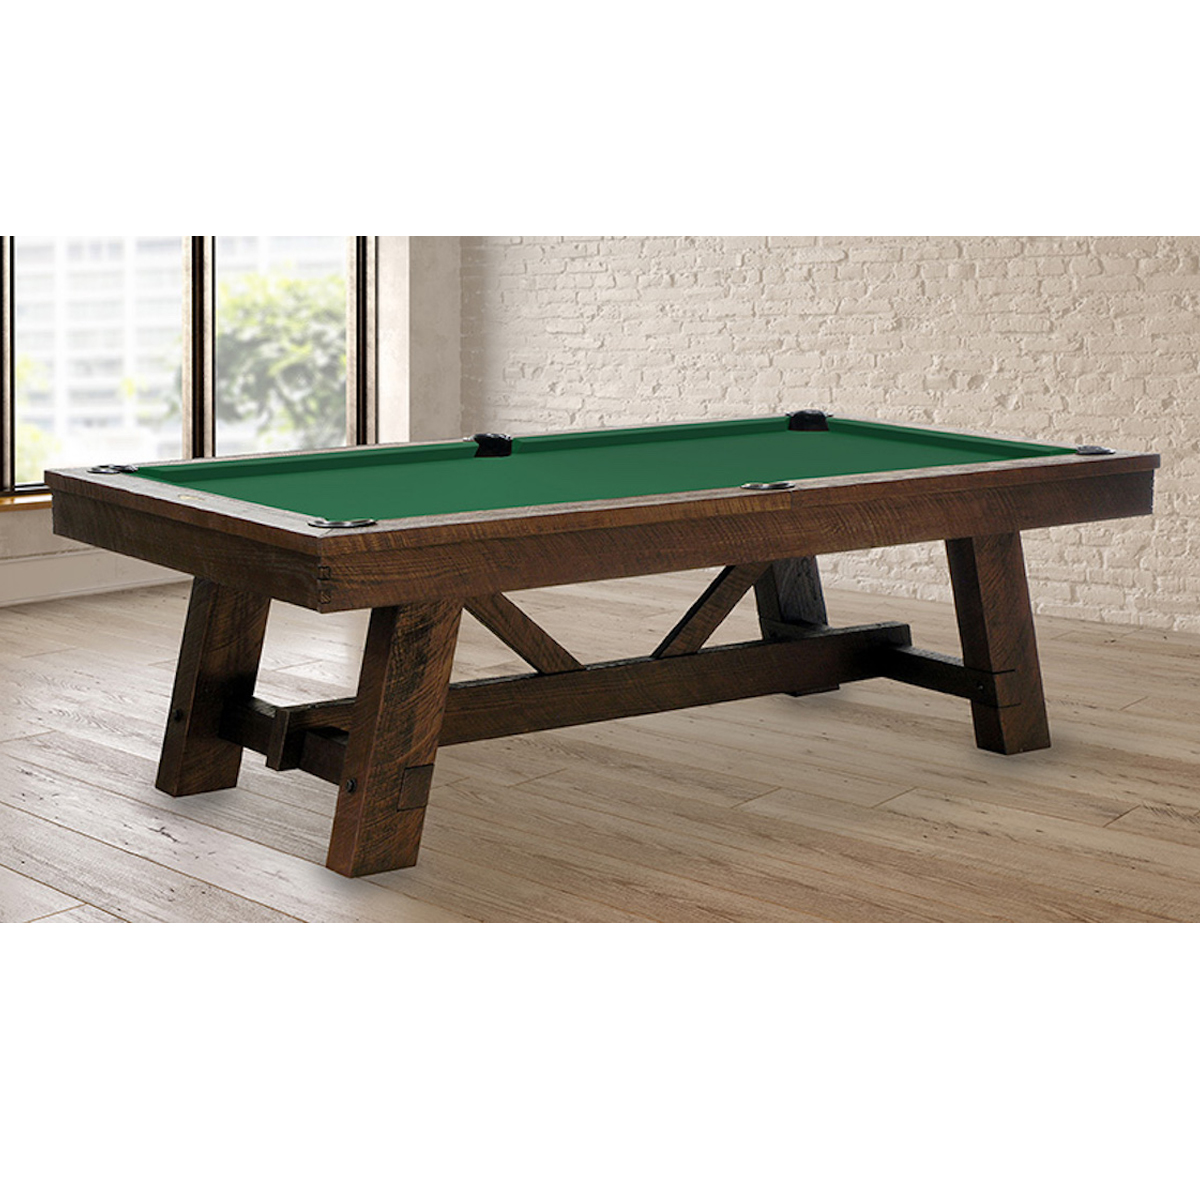 Tunbridge-Pool-Table-1-1.jpg